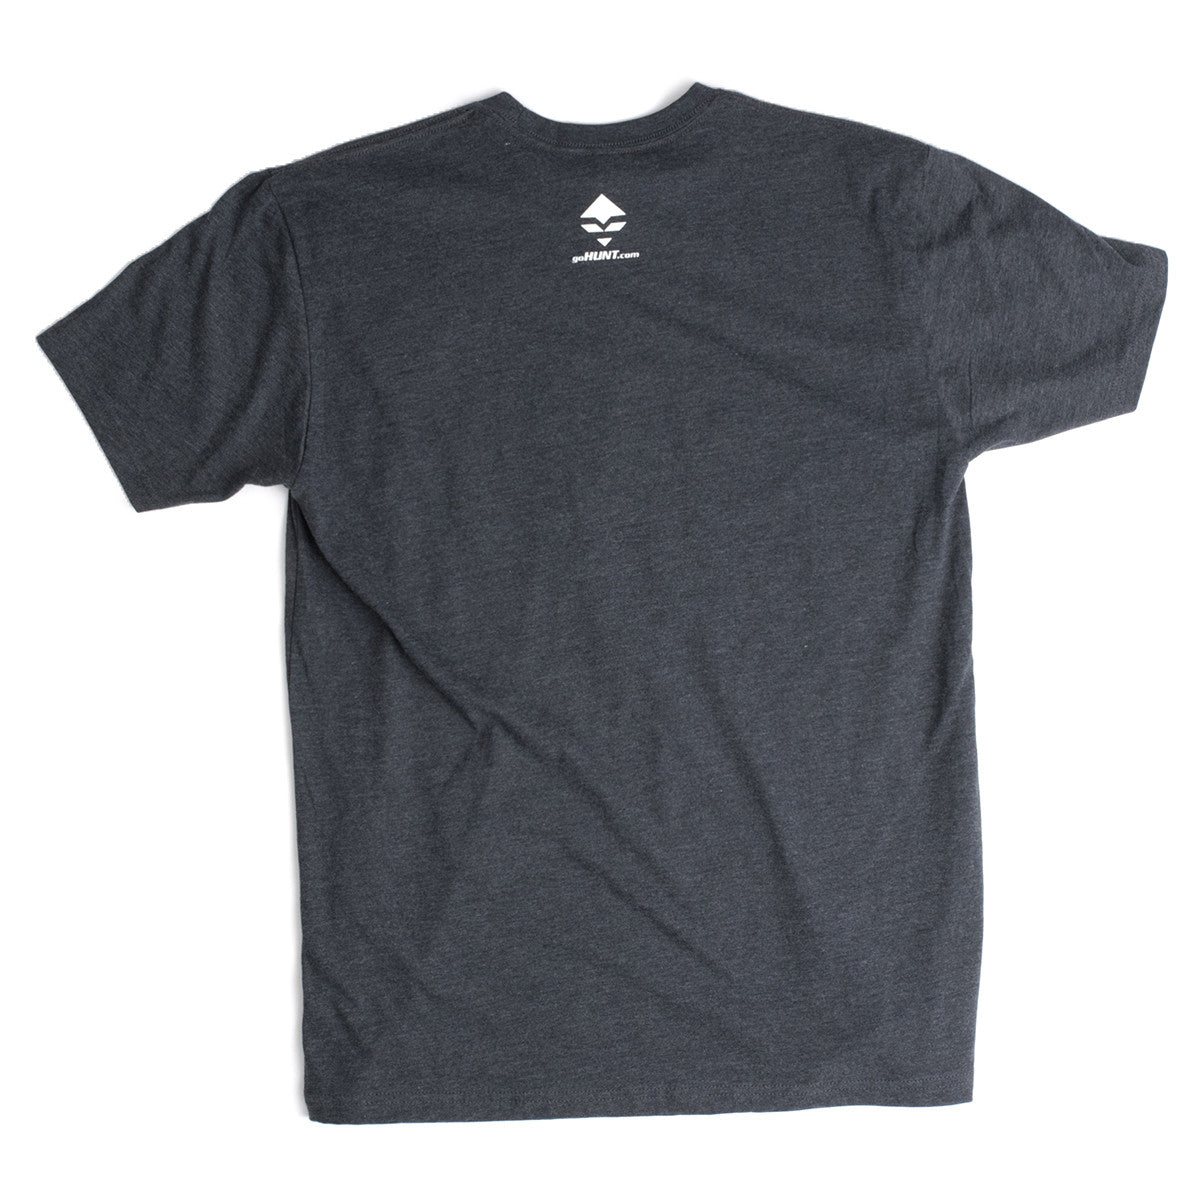 goHUNT Utah T-Shirt - goHUNT Shop